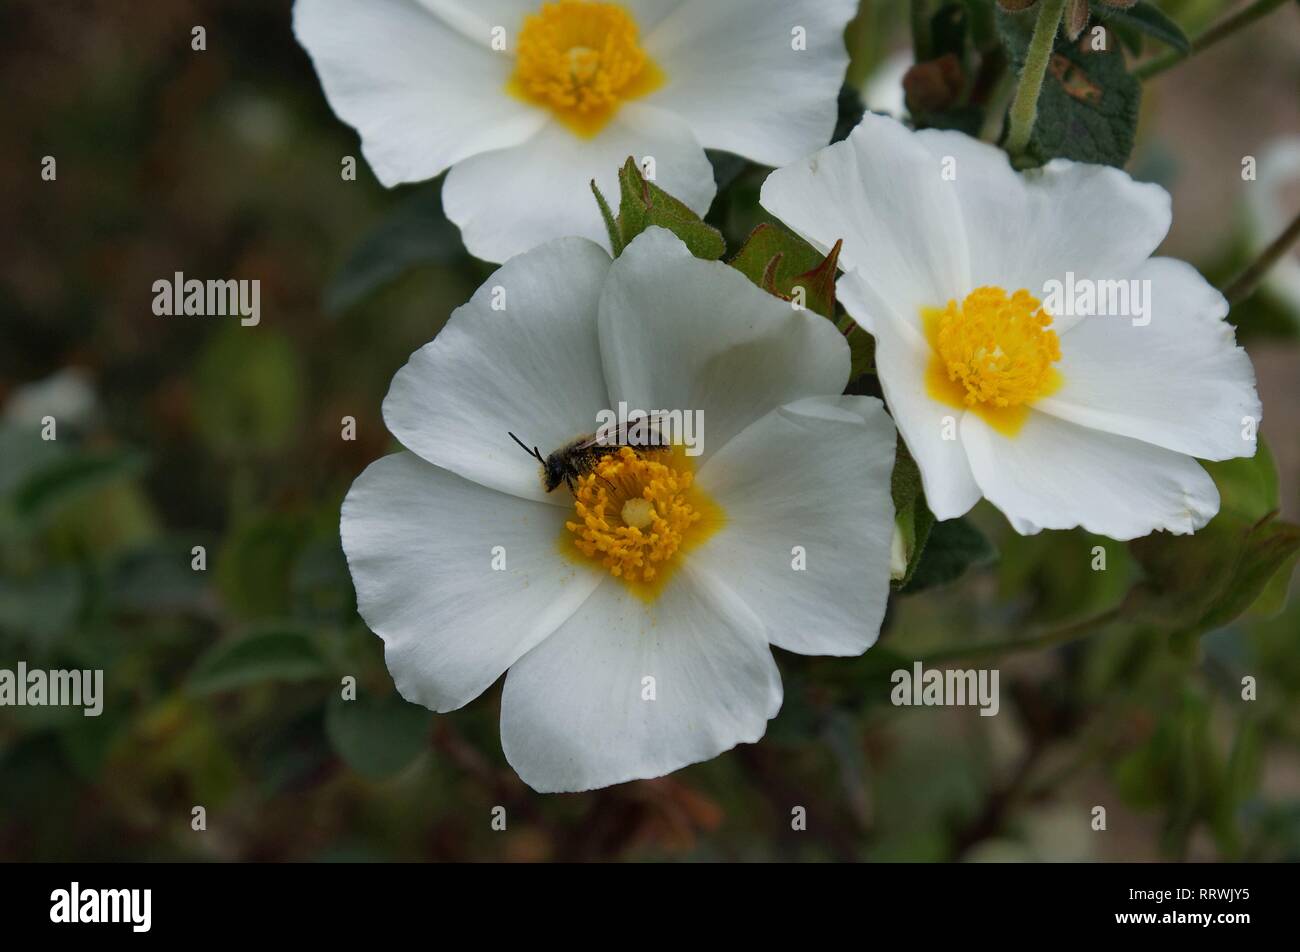 Little bee on the flower of salvia cistus Stock Photo